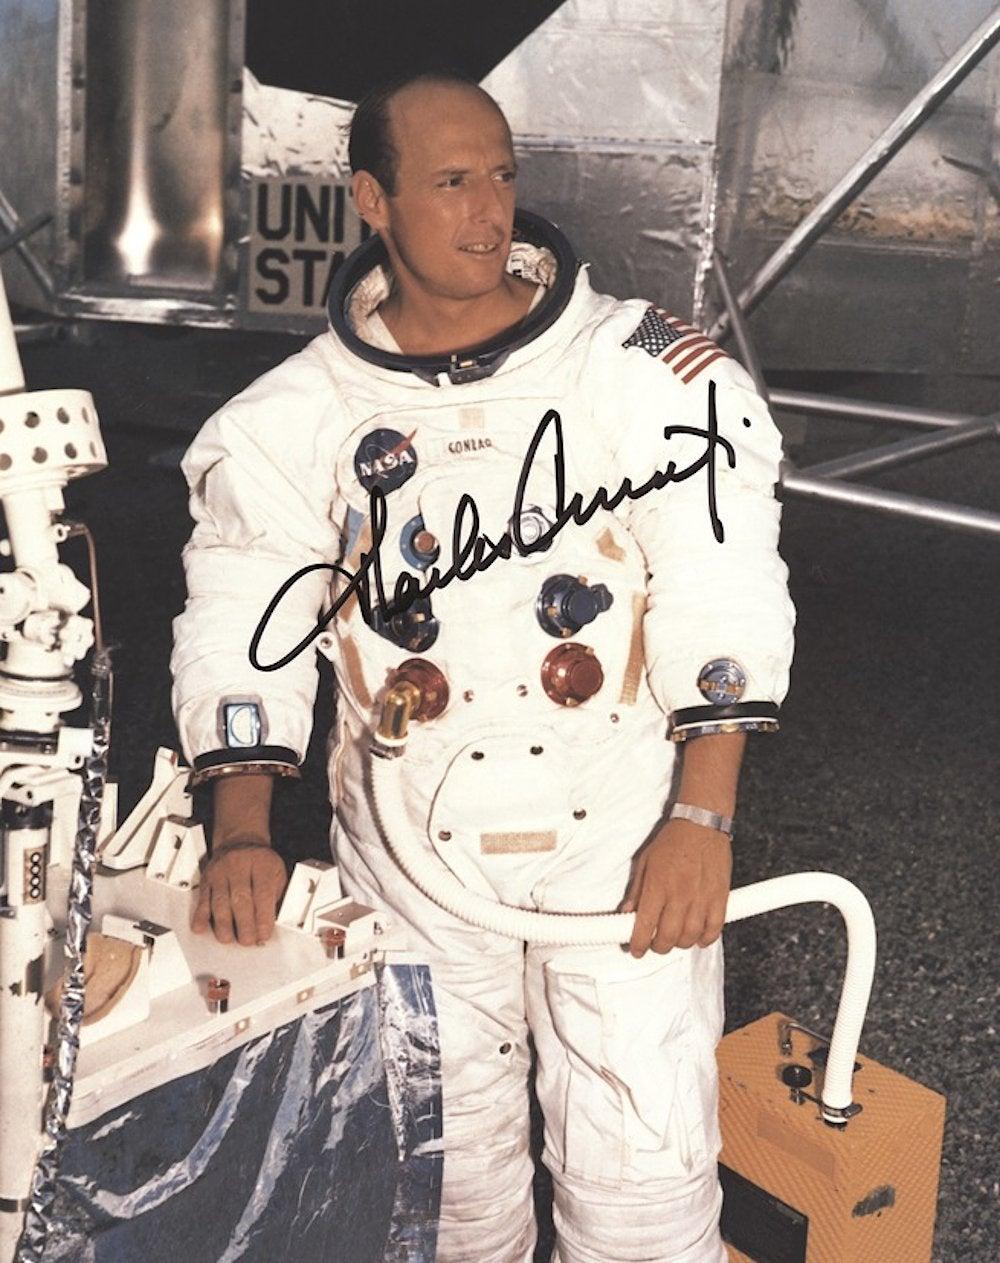 Ein signiertes Foto des Apollo-12-Astronauten Pete Conrad, dem dritten Mann auf dem Mond

Charles 